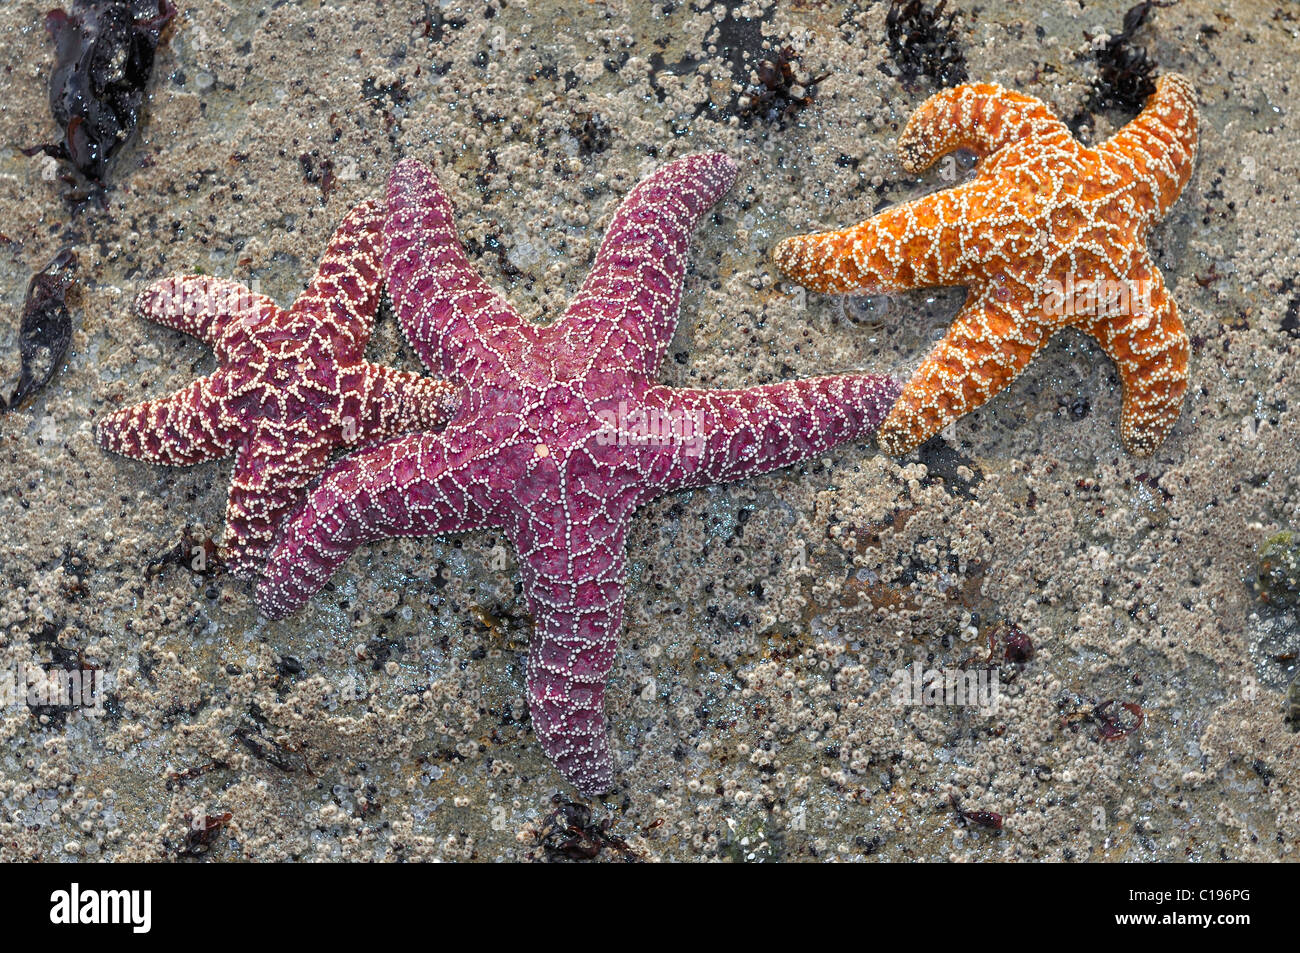 Les étoiles de mer (Échinodermes spec.) dans un bassin laissés par la marée, Olympic National Park, Washington, USA, Amérique du Nord Banque D'Images